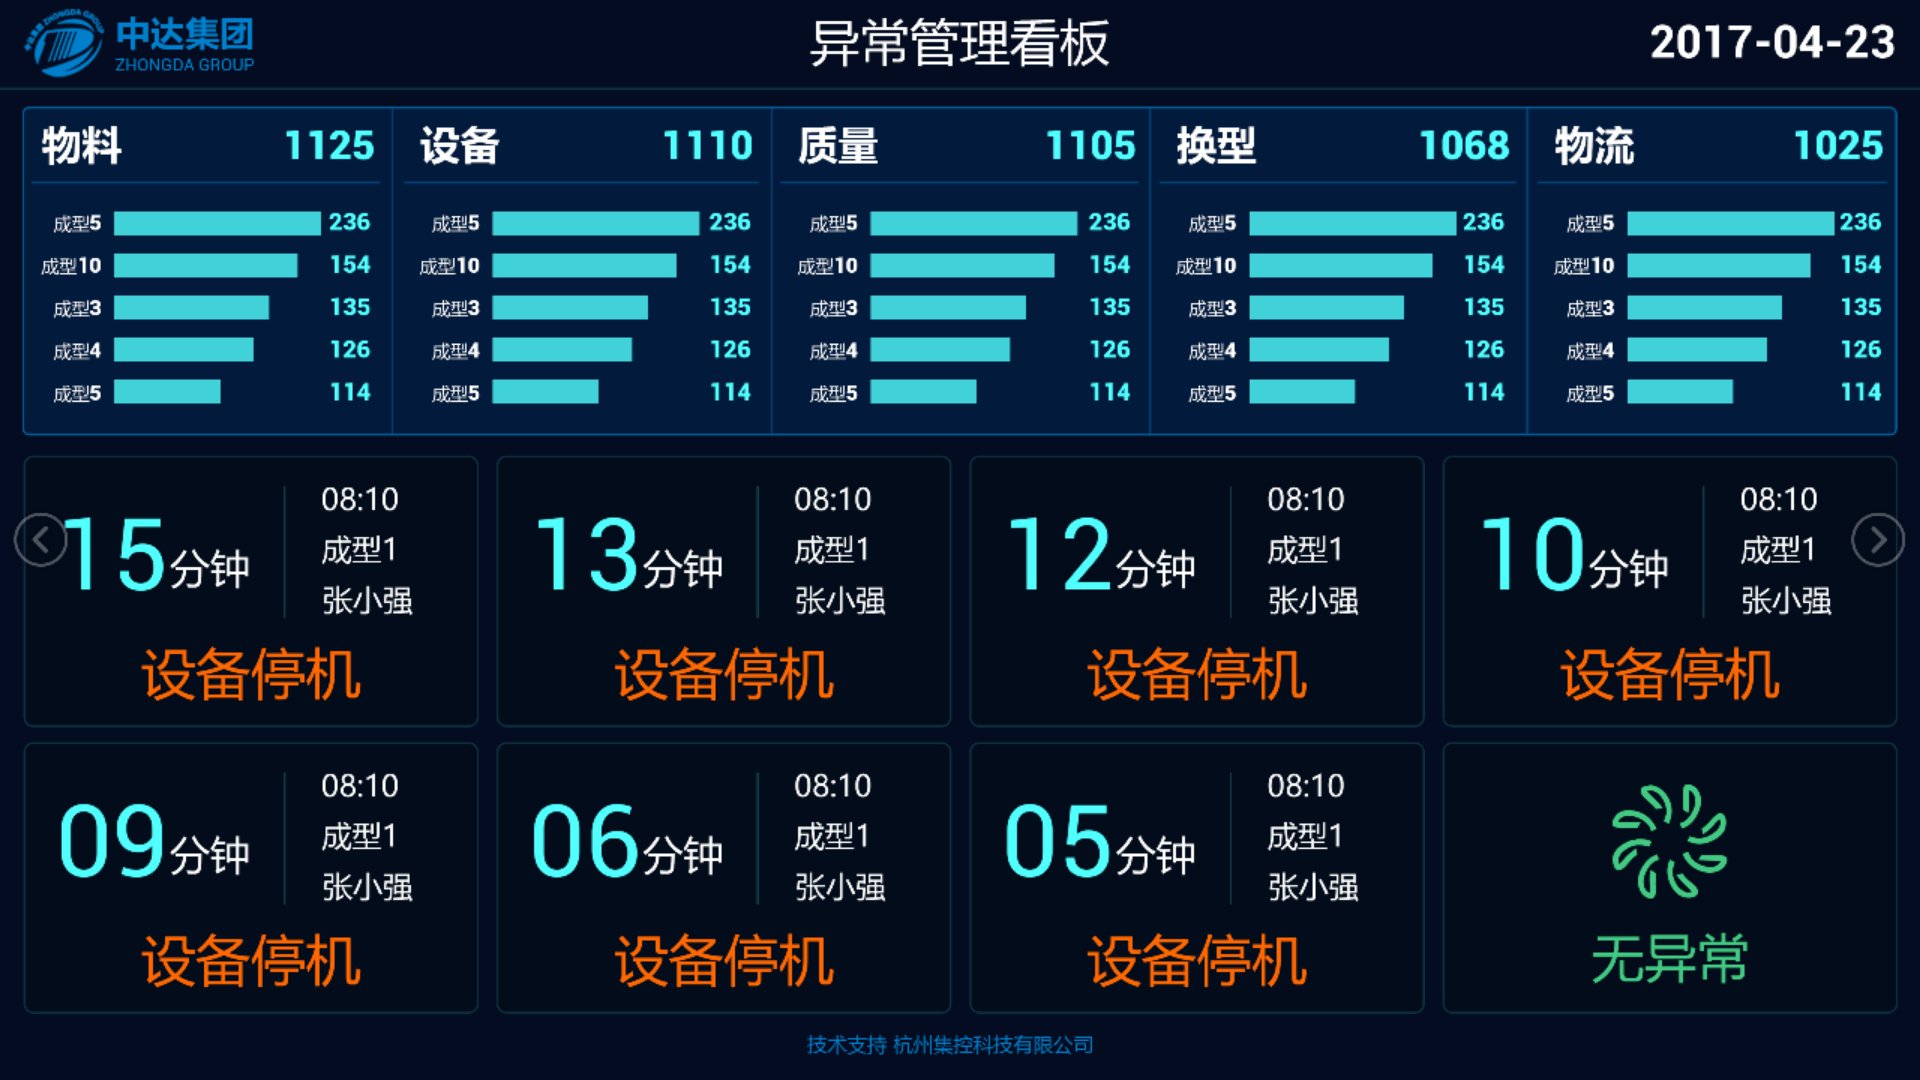 芒果体育中国电子英文打字机数据监测报告